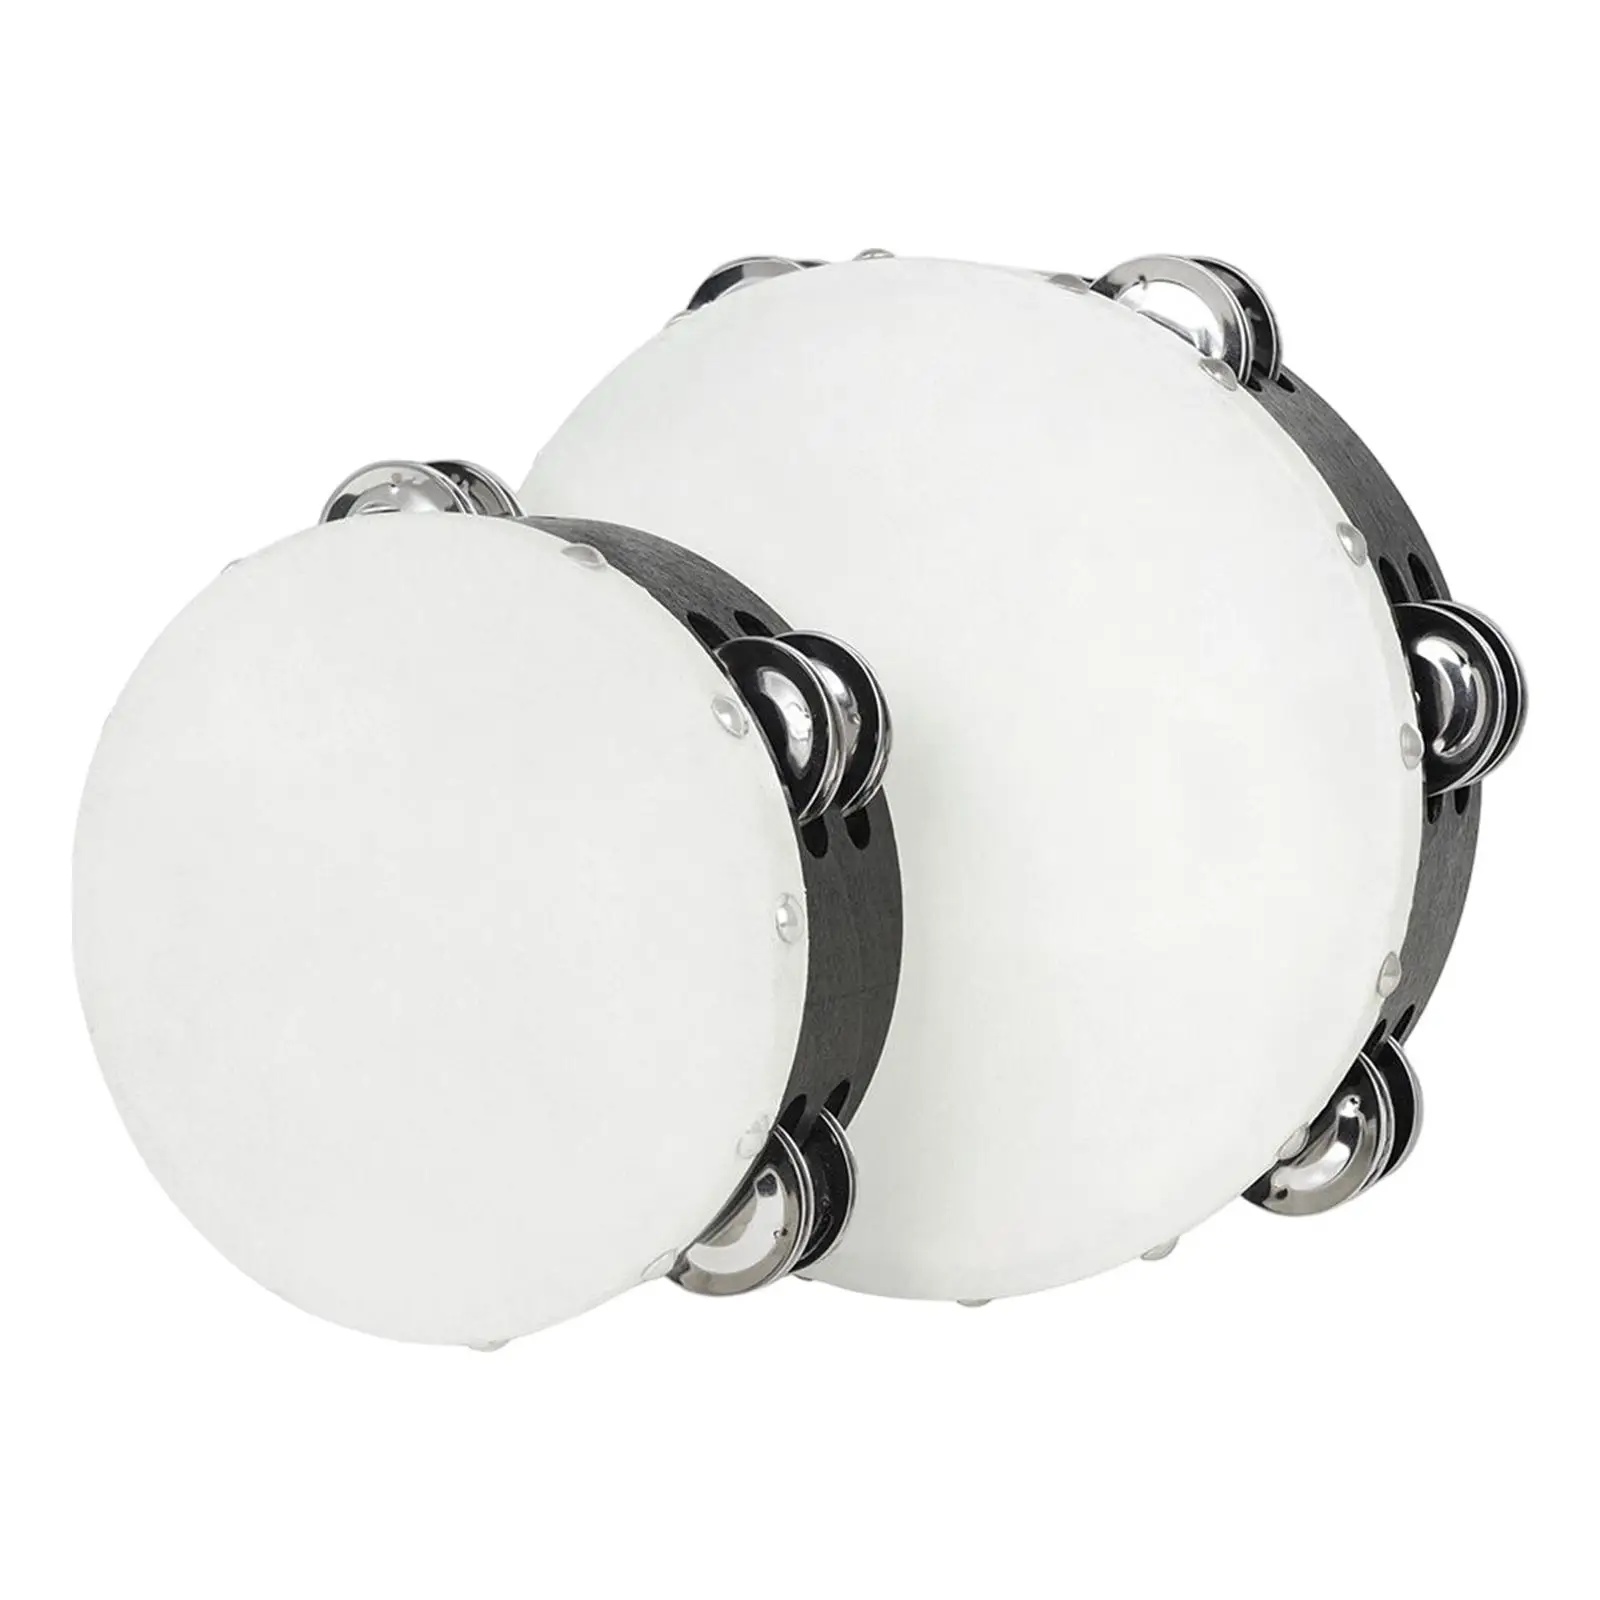 2Pcs Tambourine Hand Held Drum Children Musical Educational Hand Percussion